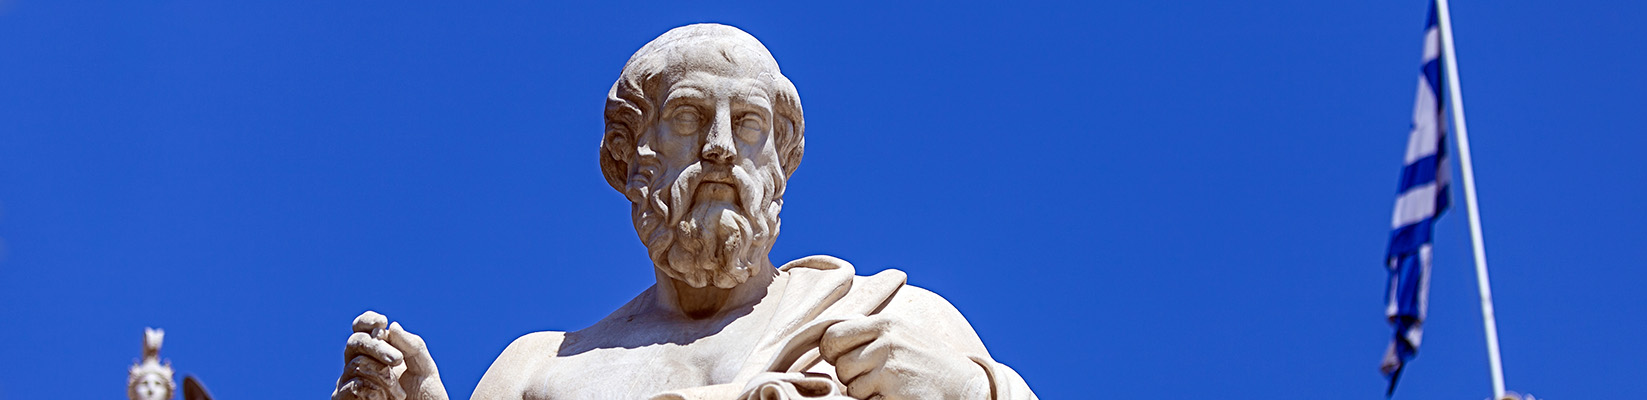 Plato's statue